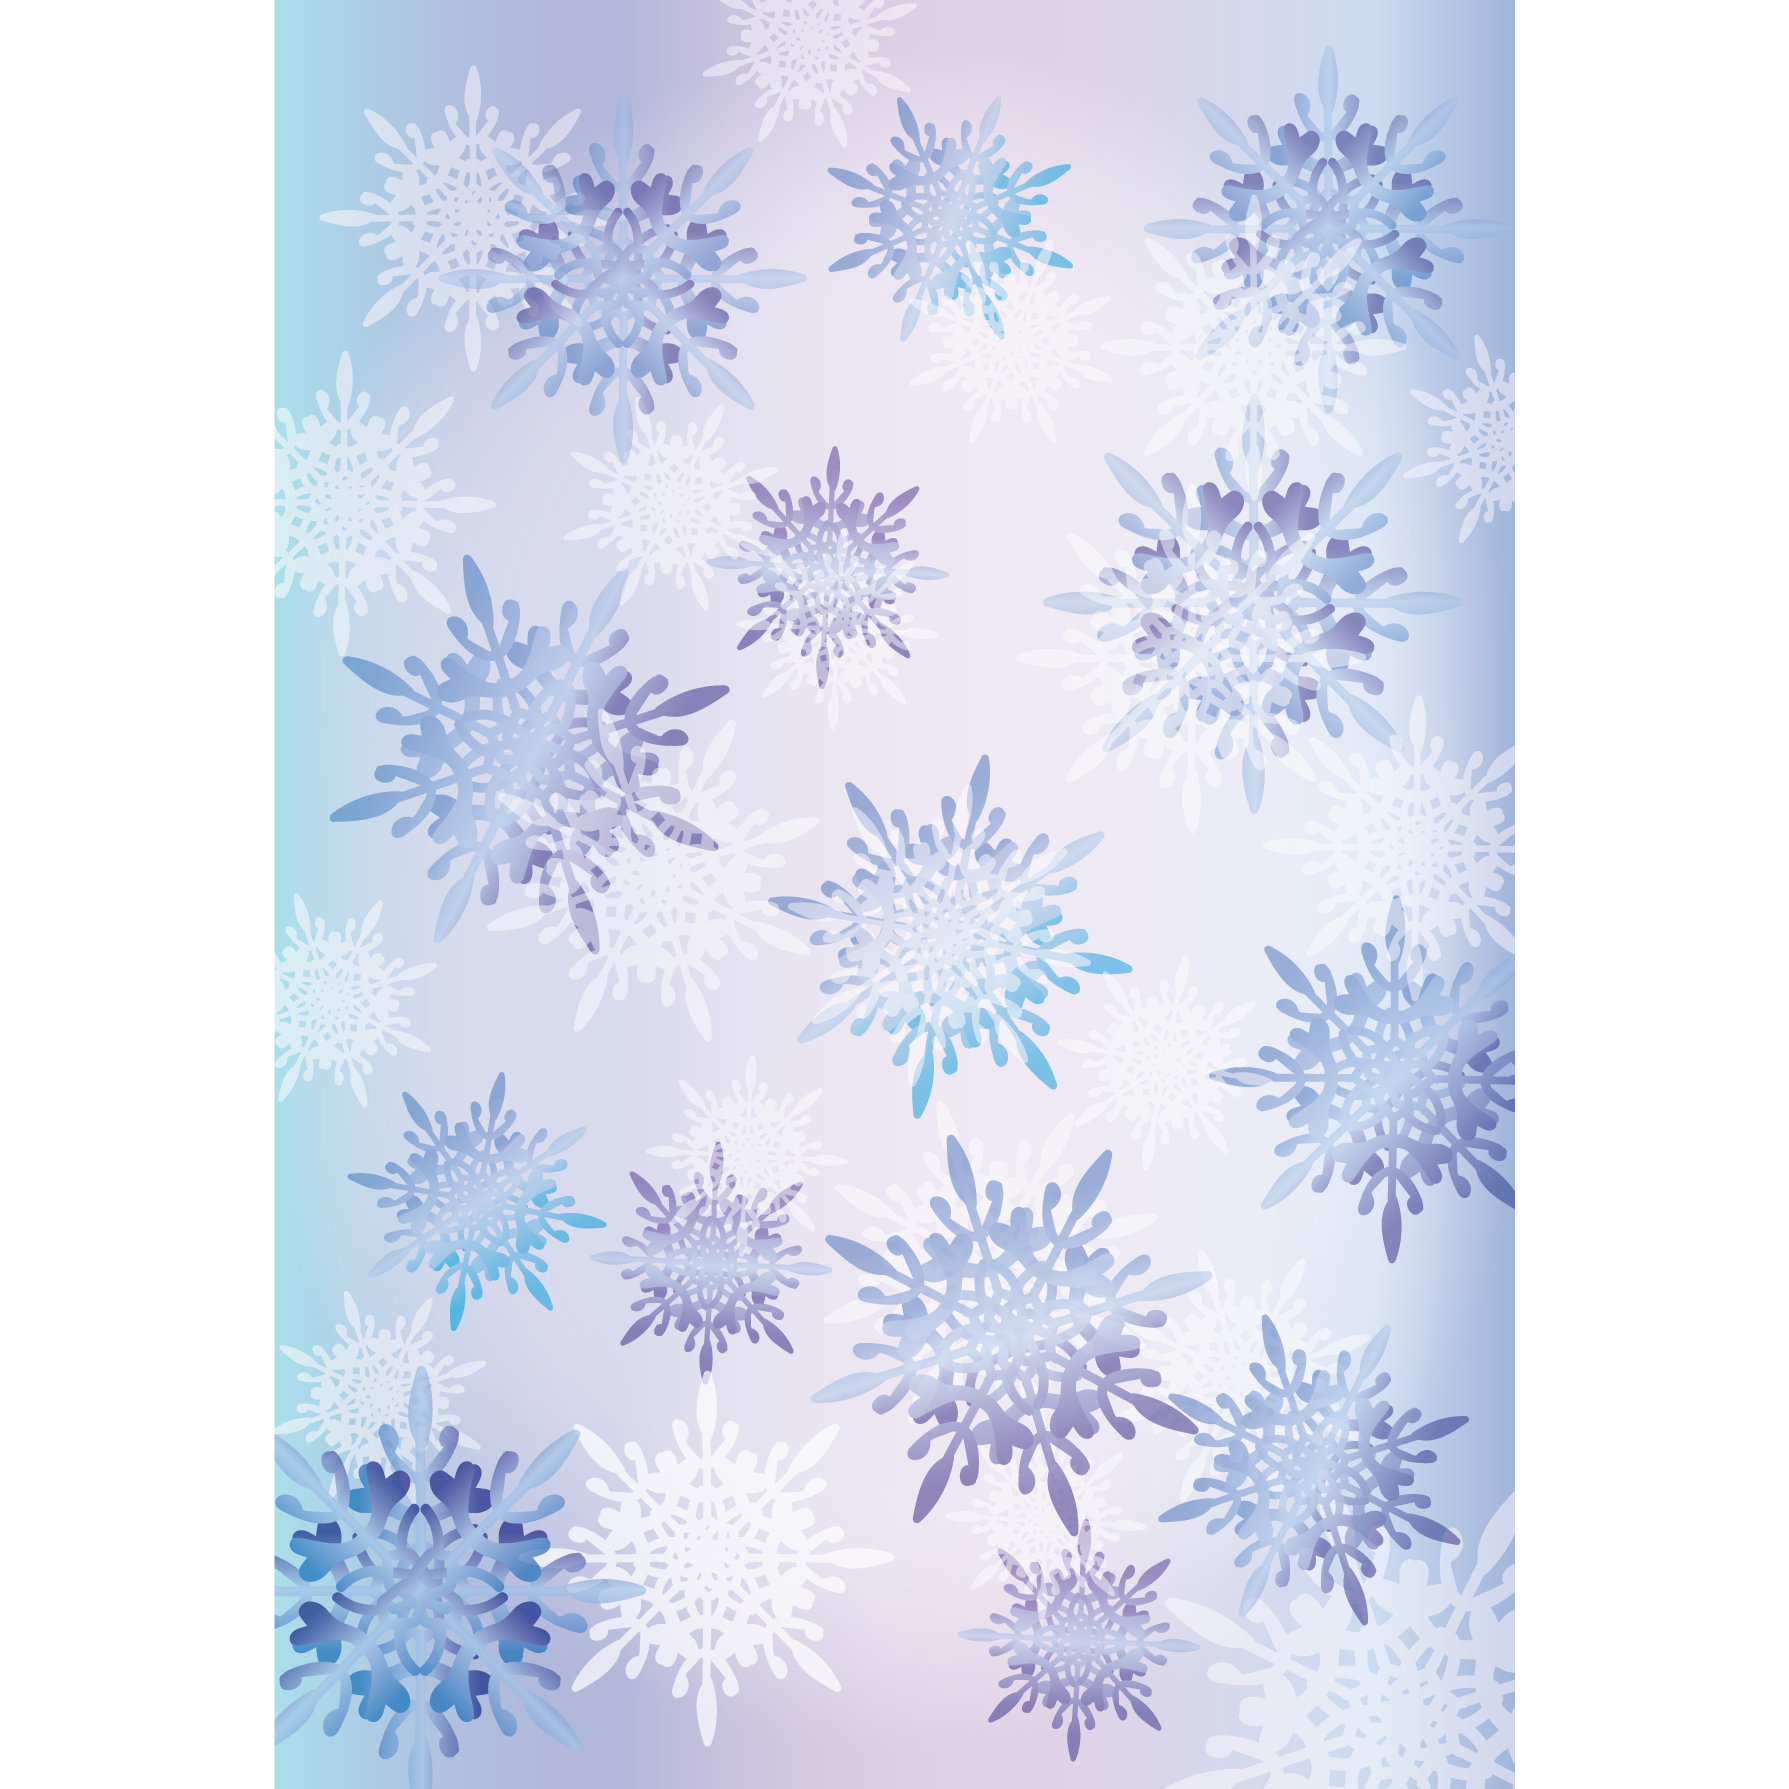 大人かわいい 雪の結晶の背景 デザイン素材 A4 フリーイラスト 商用フリー 無料 のイラスト素材なら イラストマンション